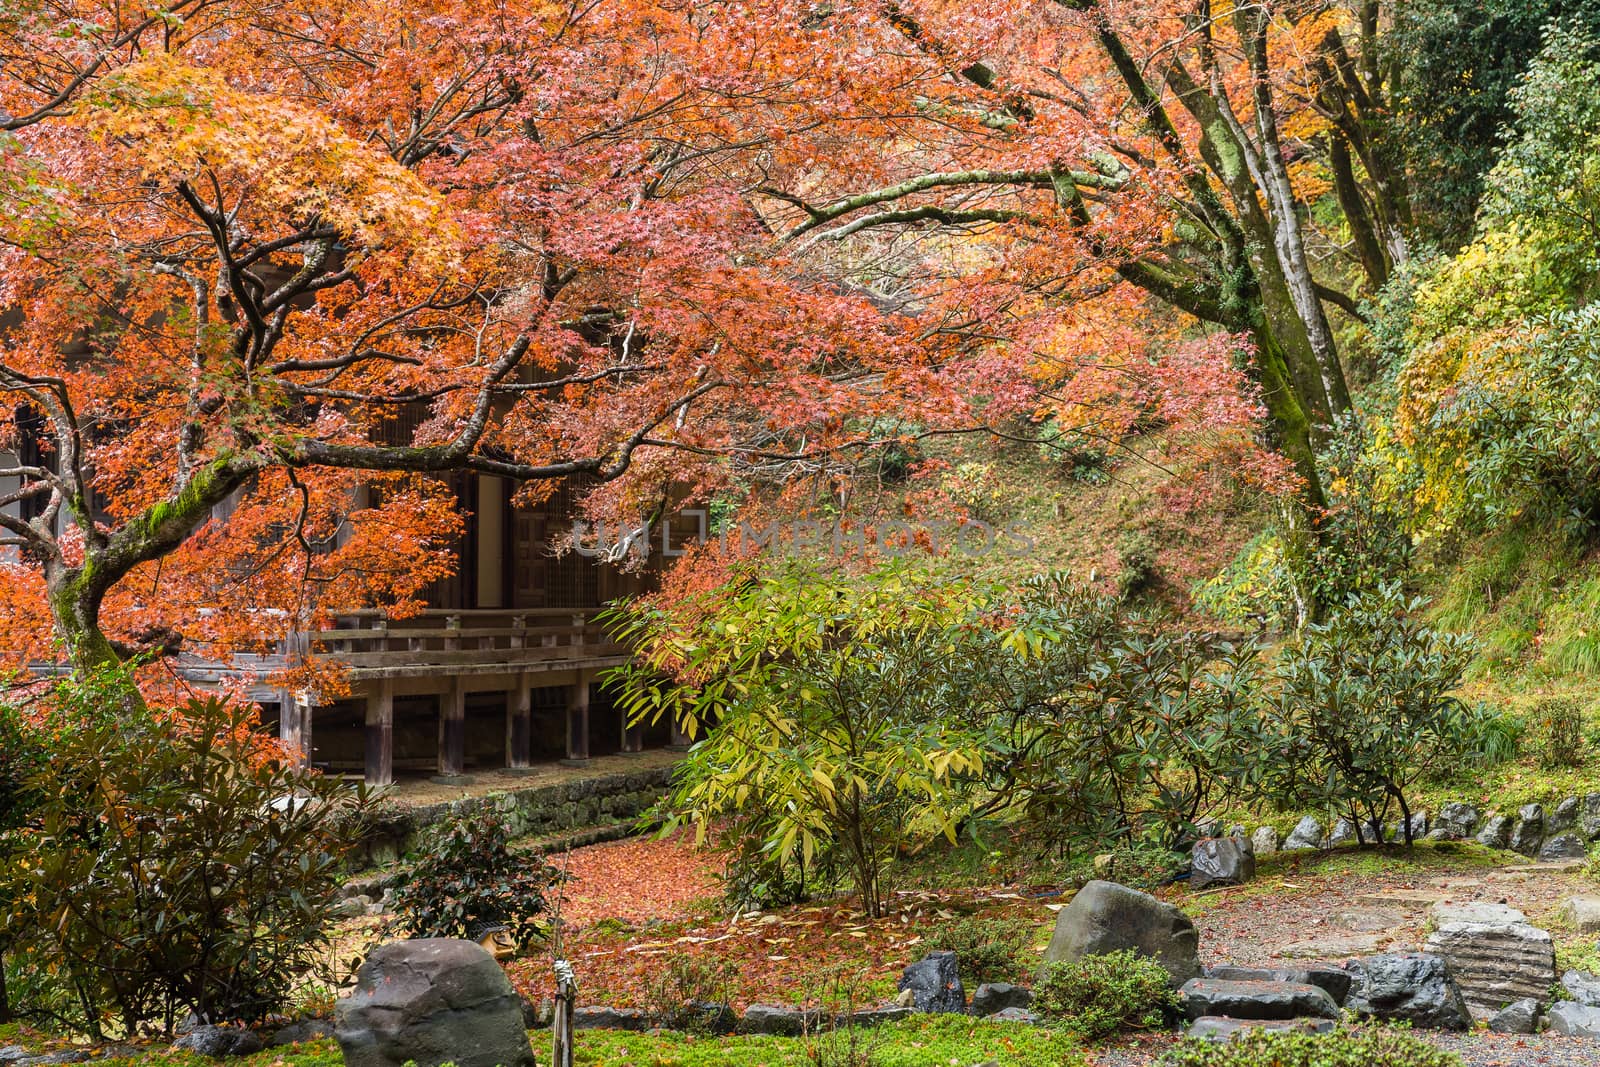 Beautiful Japanese garden in autumn